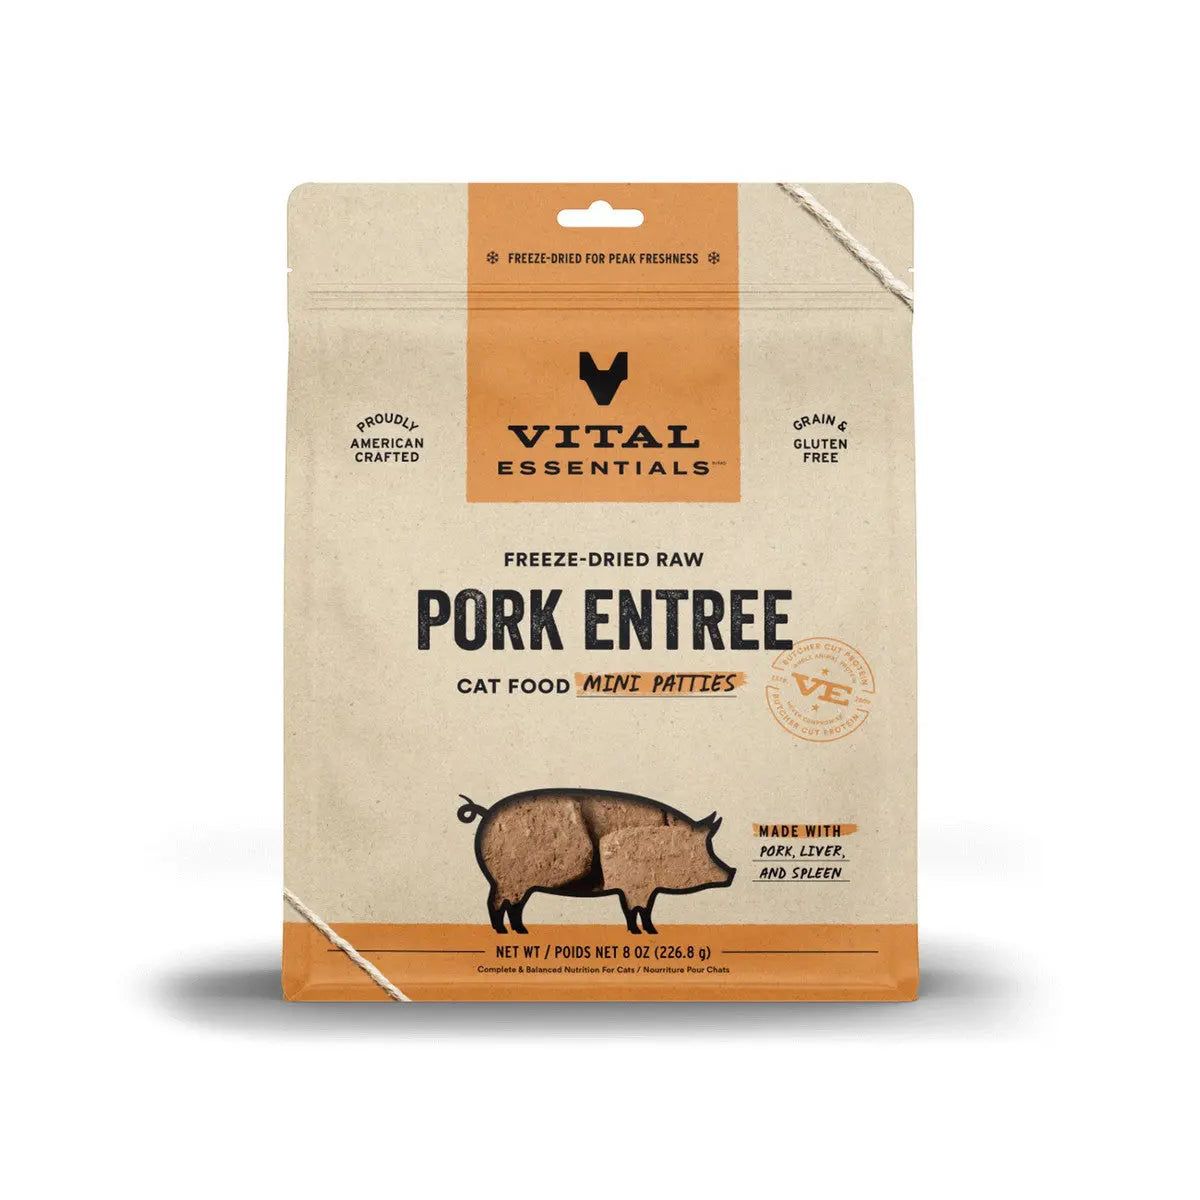 Vital Essentials® Freeze-Dried Raw Pork Entree Cat Food Mini Patties Vital Essentials®